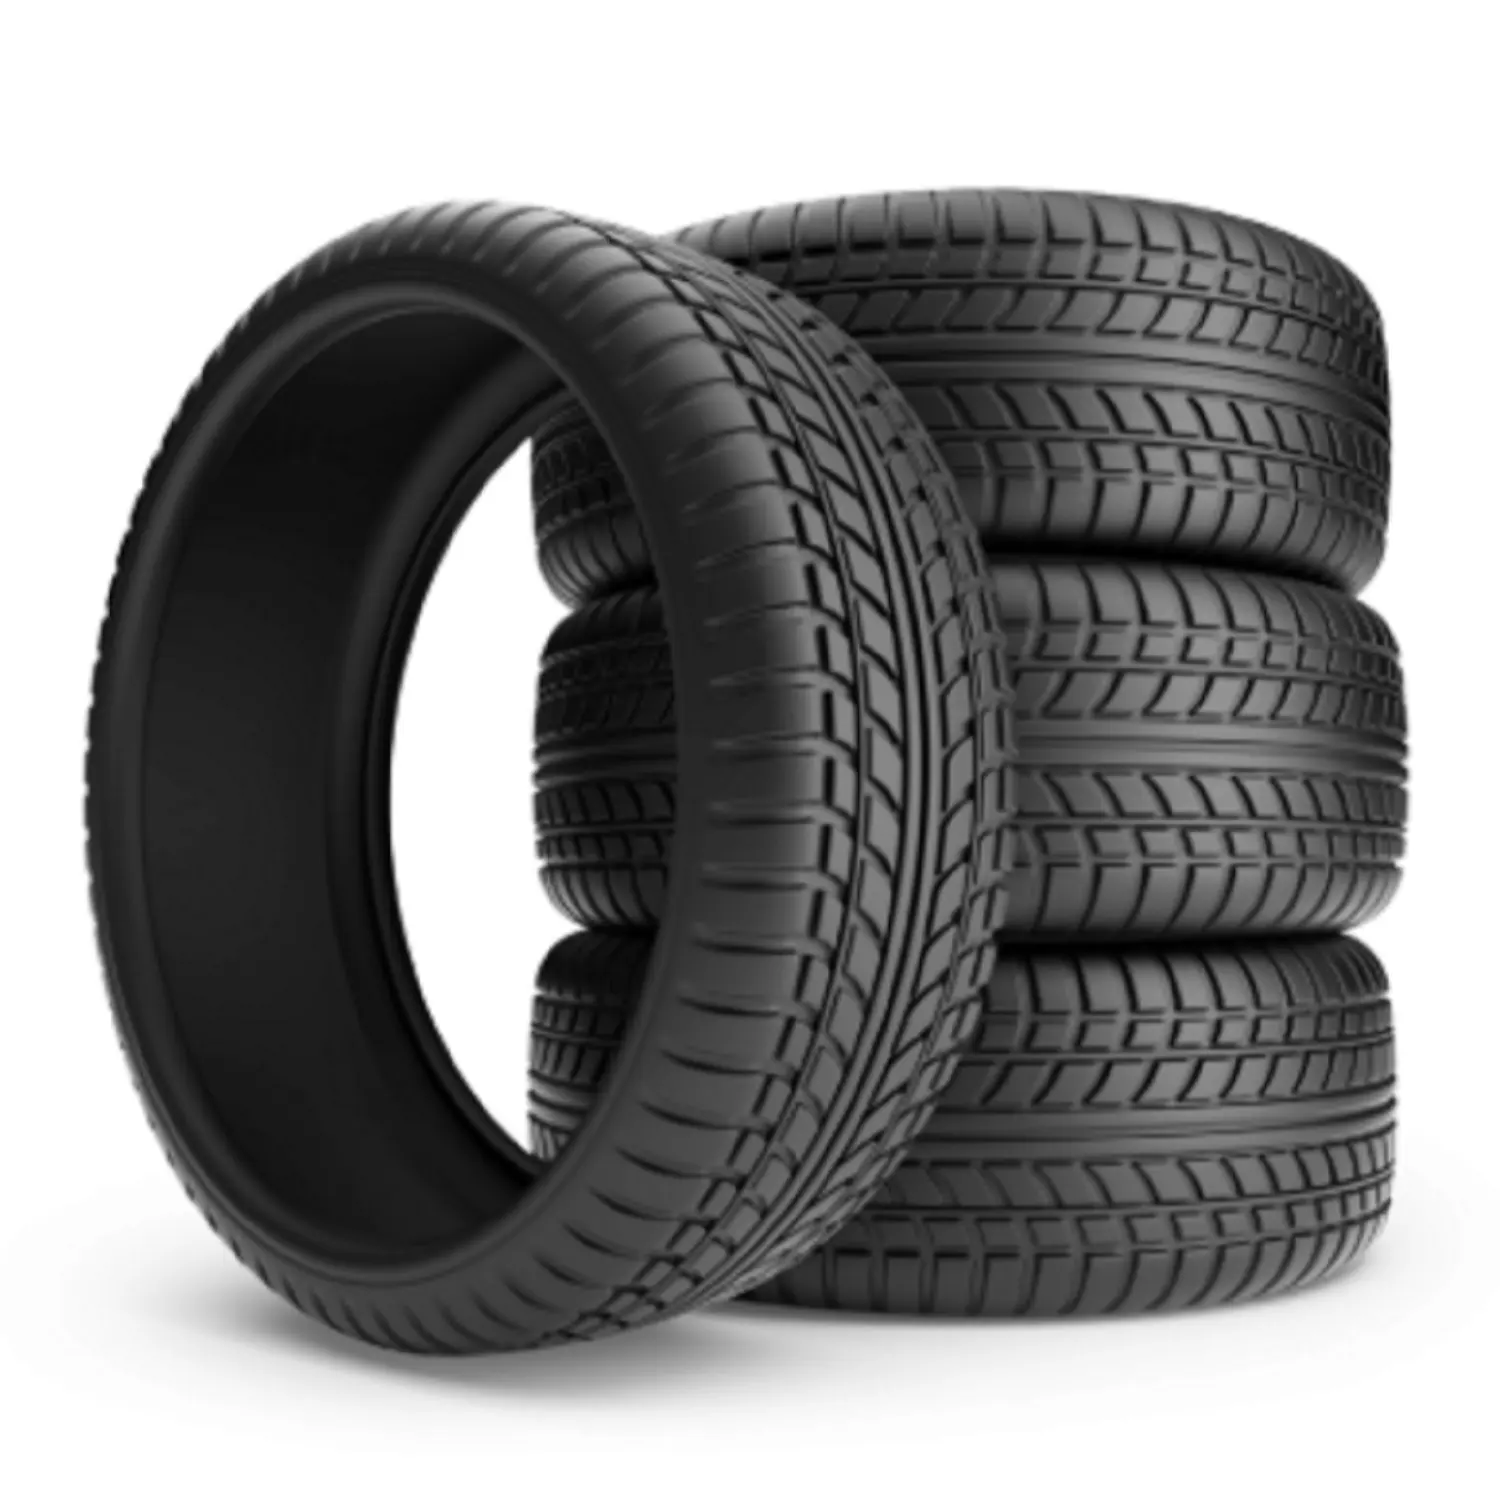 Novos e usados caminhão pneus/caminhão pneus para venda/barato caminhão pneus 295/75R22. 5, 275/70R22. 5, e 225/70R19